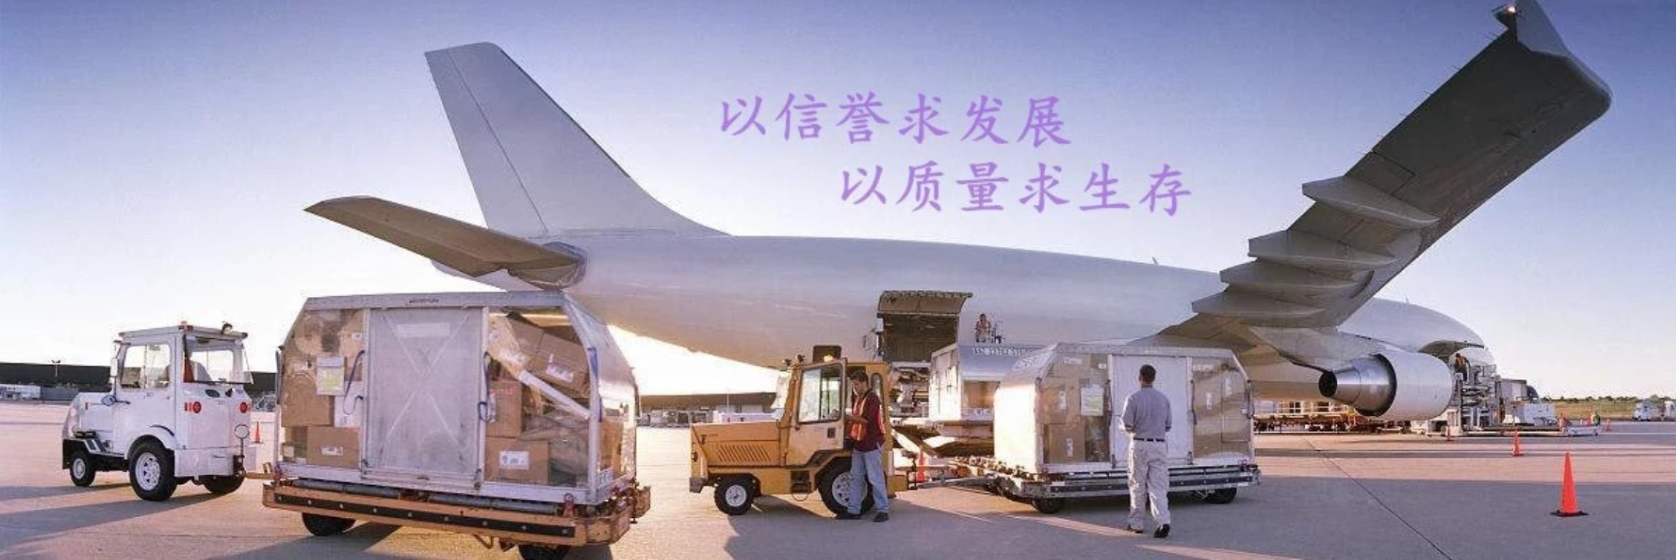 上海海运散货拼箱 出口海运散货拼箱货代公司上海隆禾国际货代